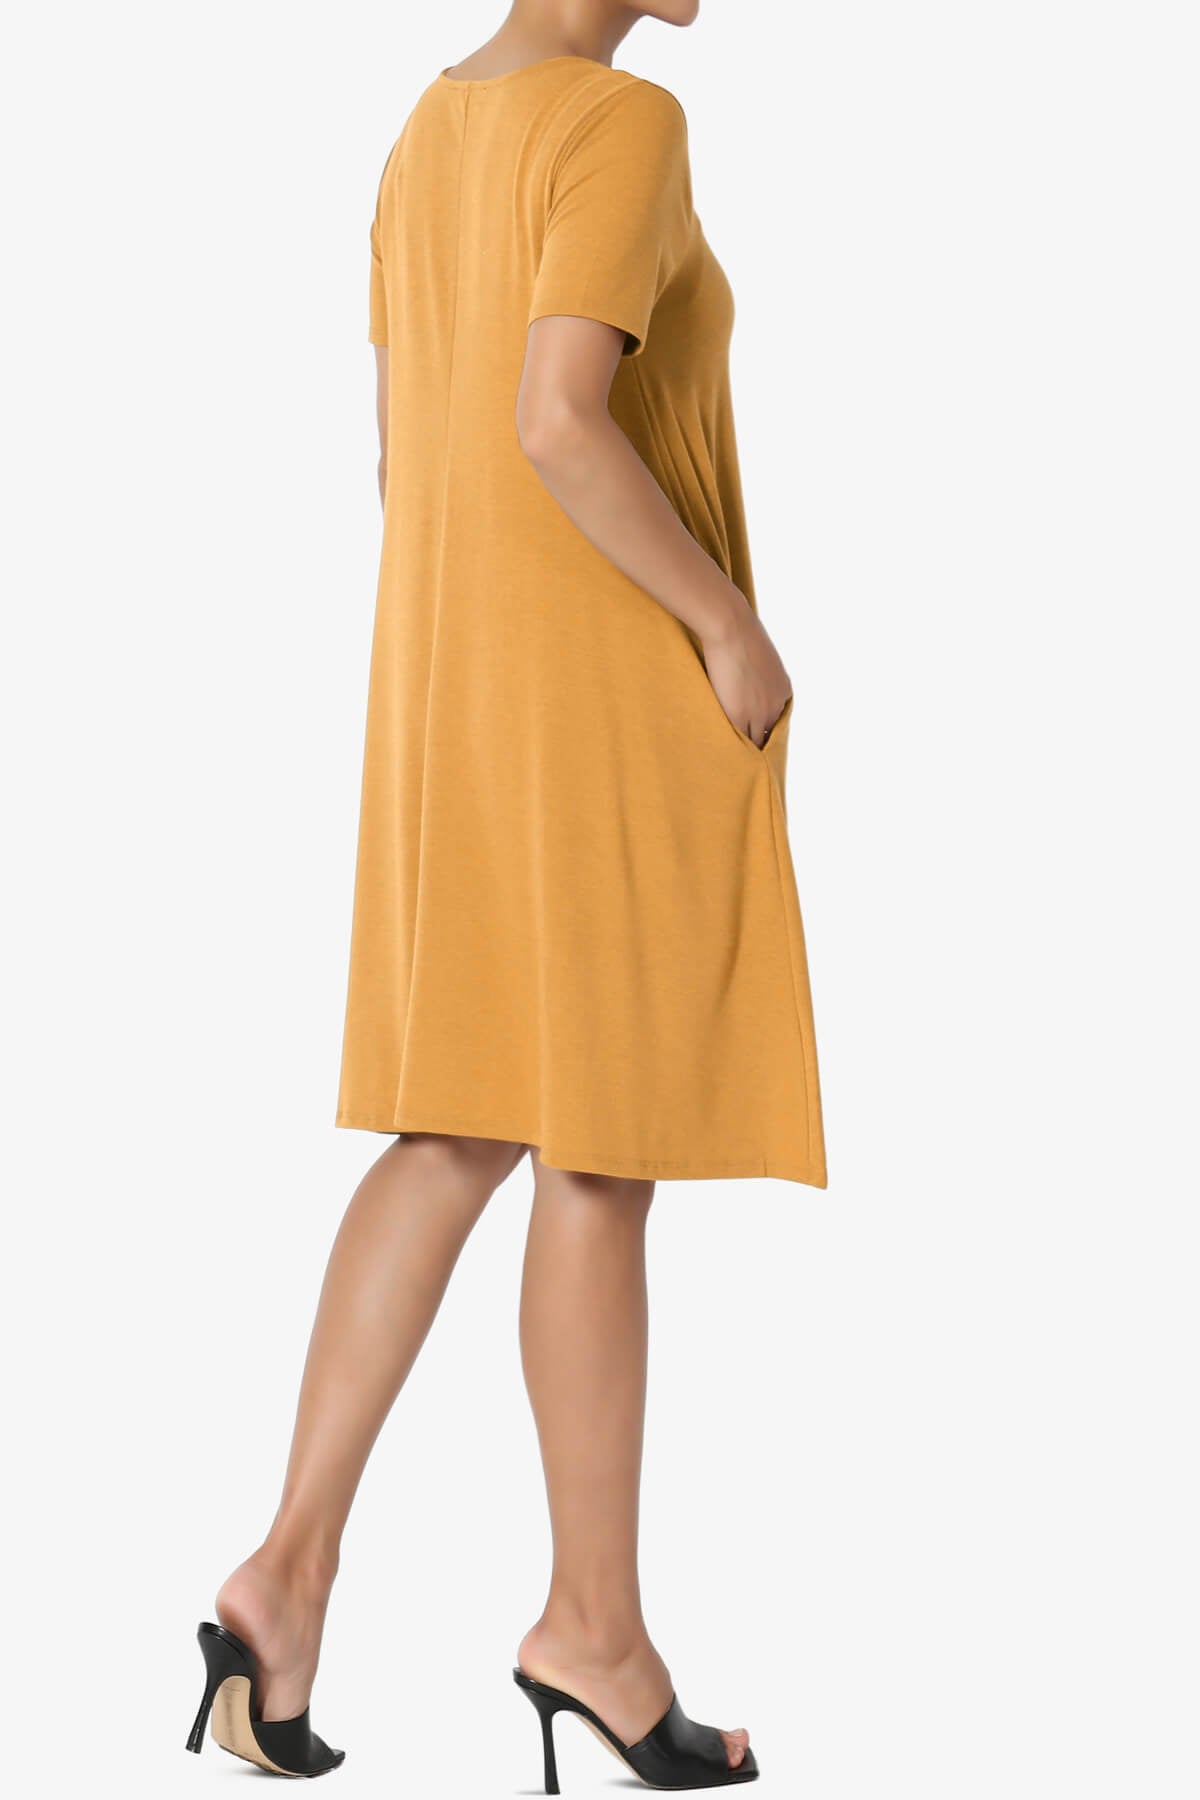 Allie Short Sleeve Jersey A-Line Dress GOLDEN MUSTARD_4